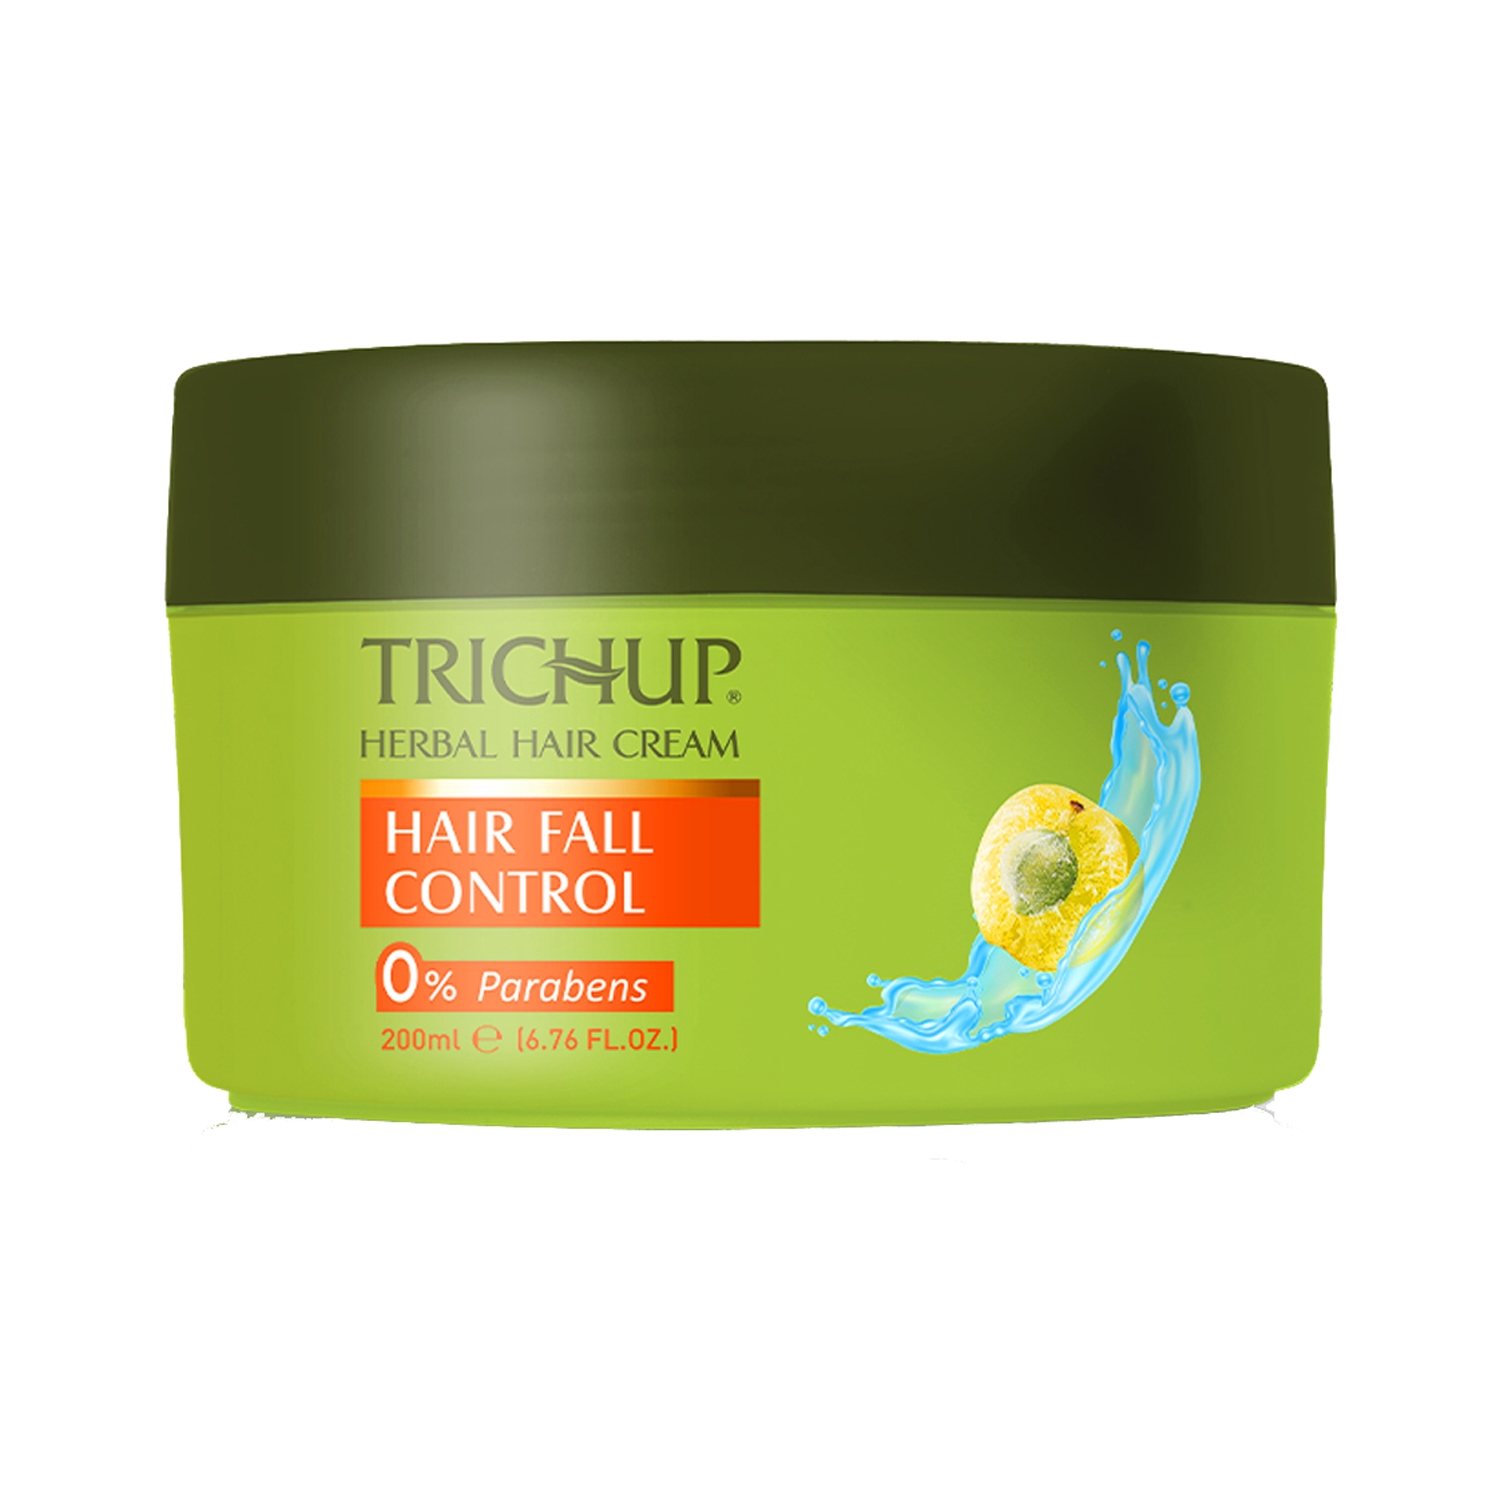 Trichup | Trichup Hair Fall Control Herbal Hair Cream (200ml)